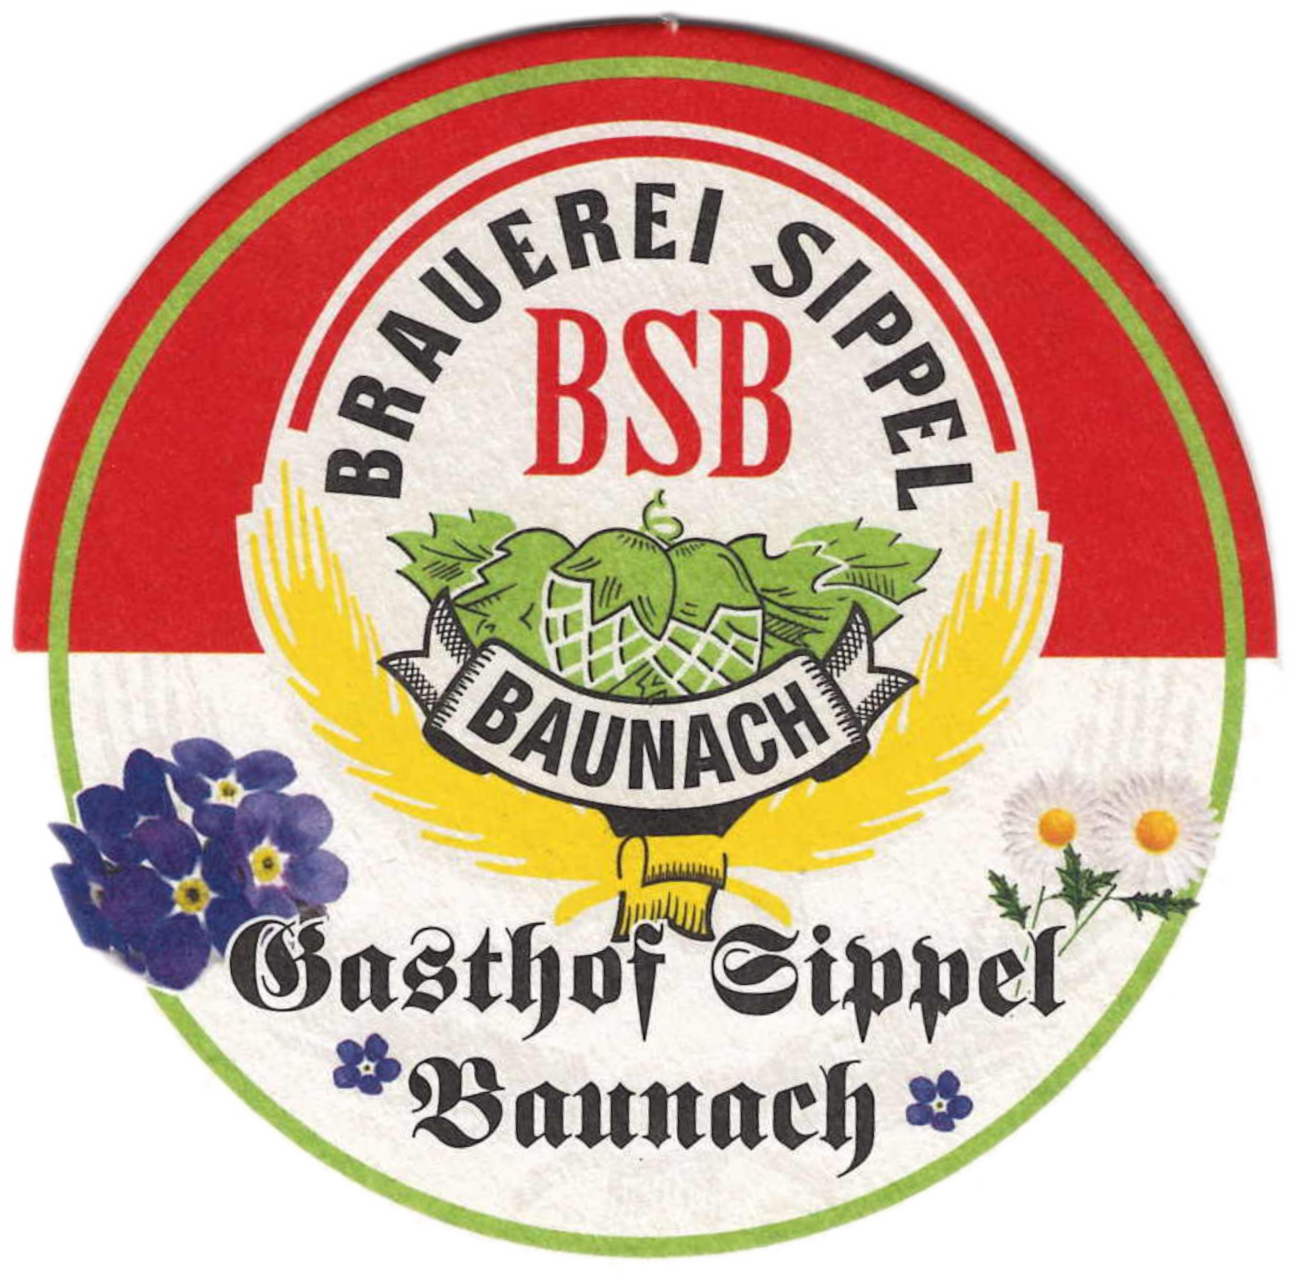 Logo auf einem Bierfilz des Gasthof Sippel